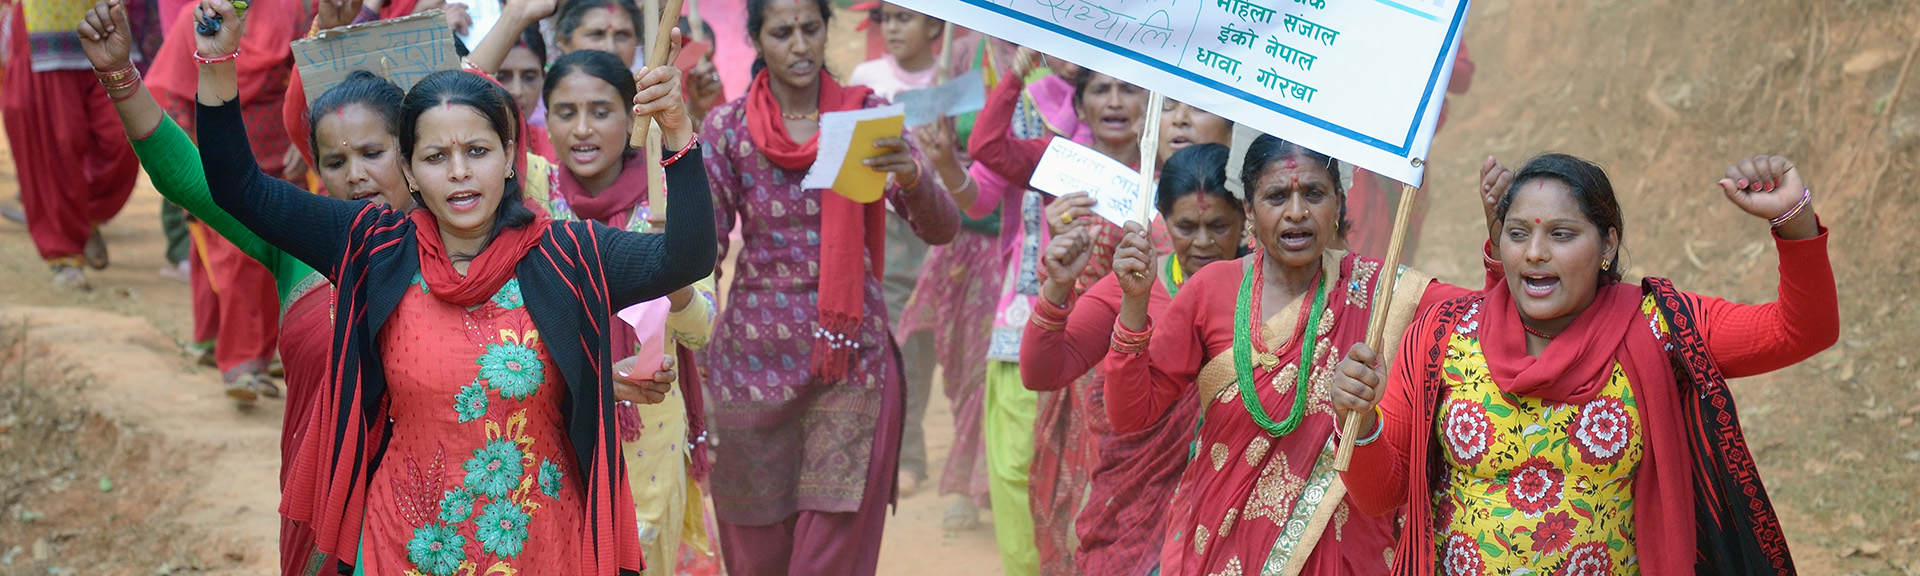 Frauen, die zusammen marschieren um den Internationalen Frauentag am 8. März 2016 zu feiern. In Dhawa, einem Dorf in dem Gorkha District von Nepal.Nach dem schweren Erdbeben am 25. April 2015 half die Diakonie Katastrophenhilfe zusammen mit nepalesischen Partnerorganisationen und Mitgliedern des weltweiten kirchlichen Netzwerks ACT Alliance den Menschen in Nepal mit Soforthilfe und Wiederaufbaumaßnahmen.